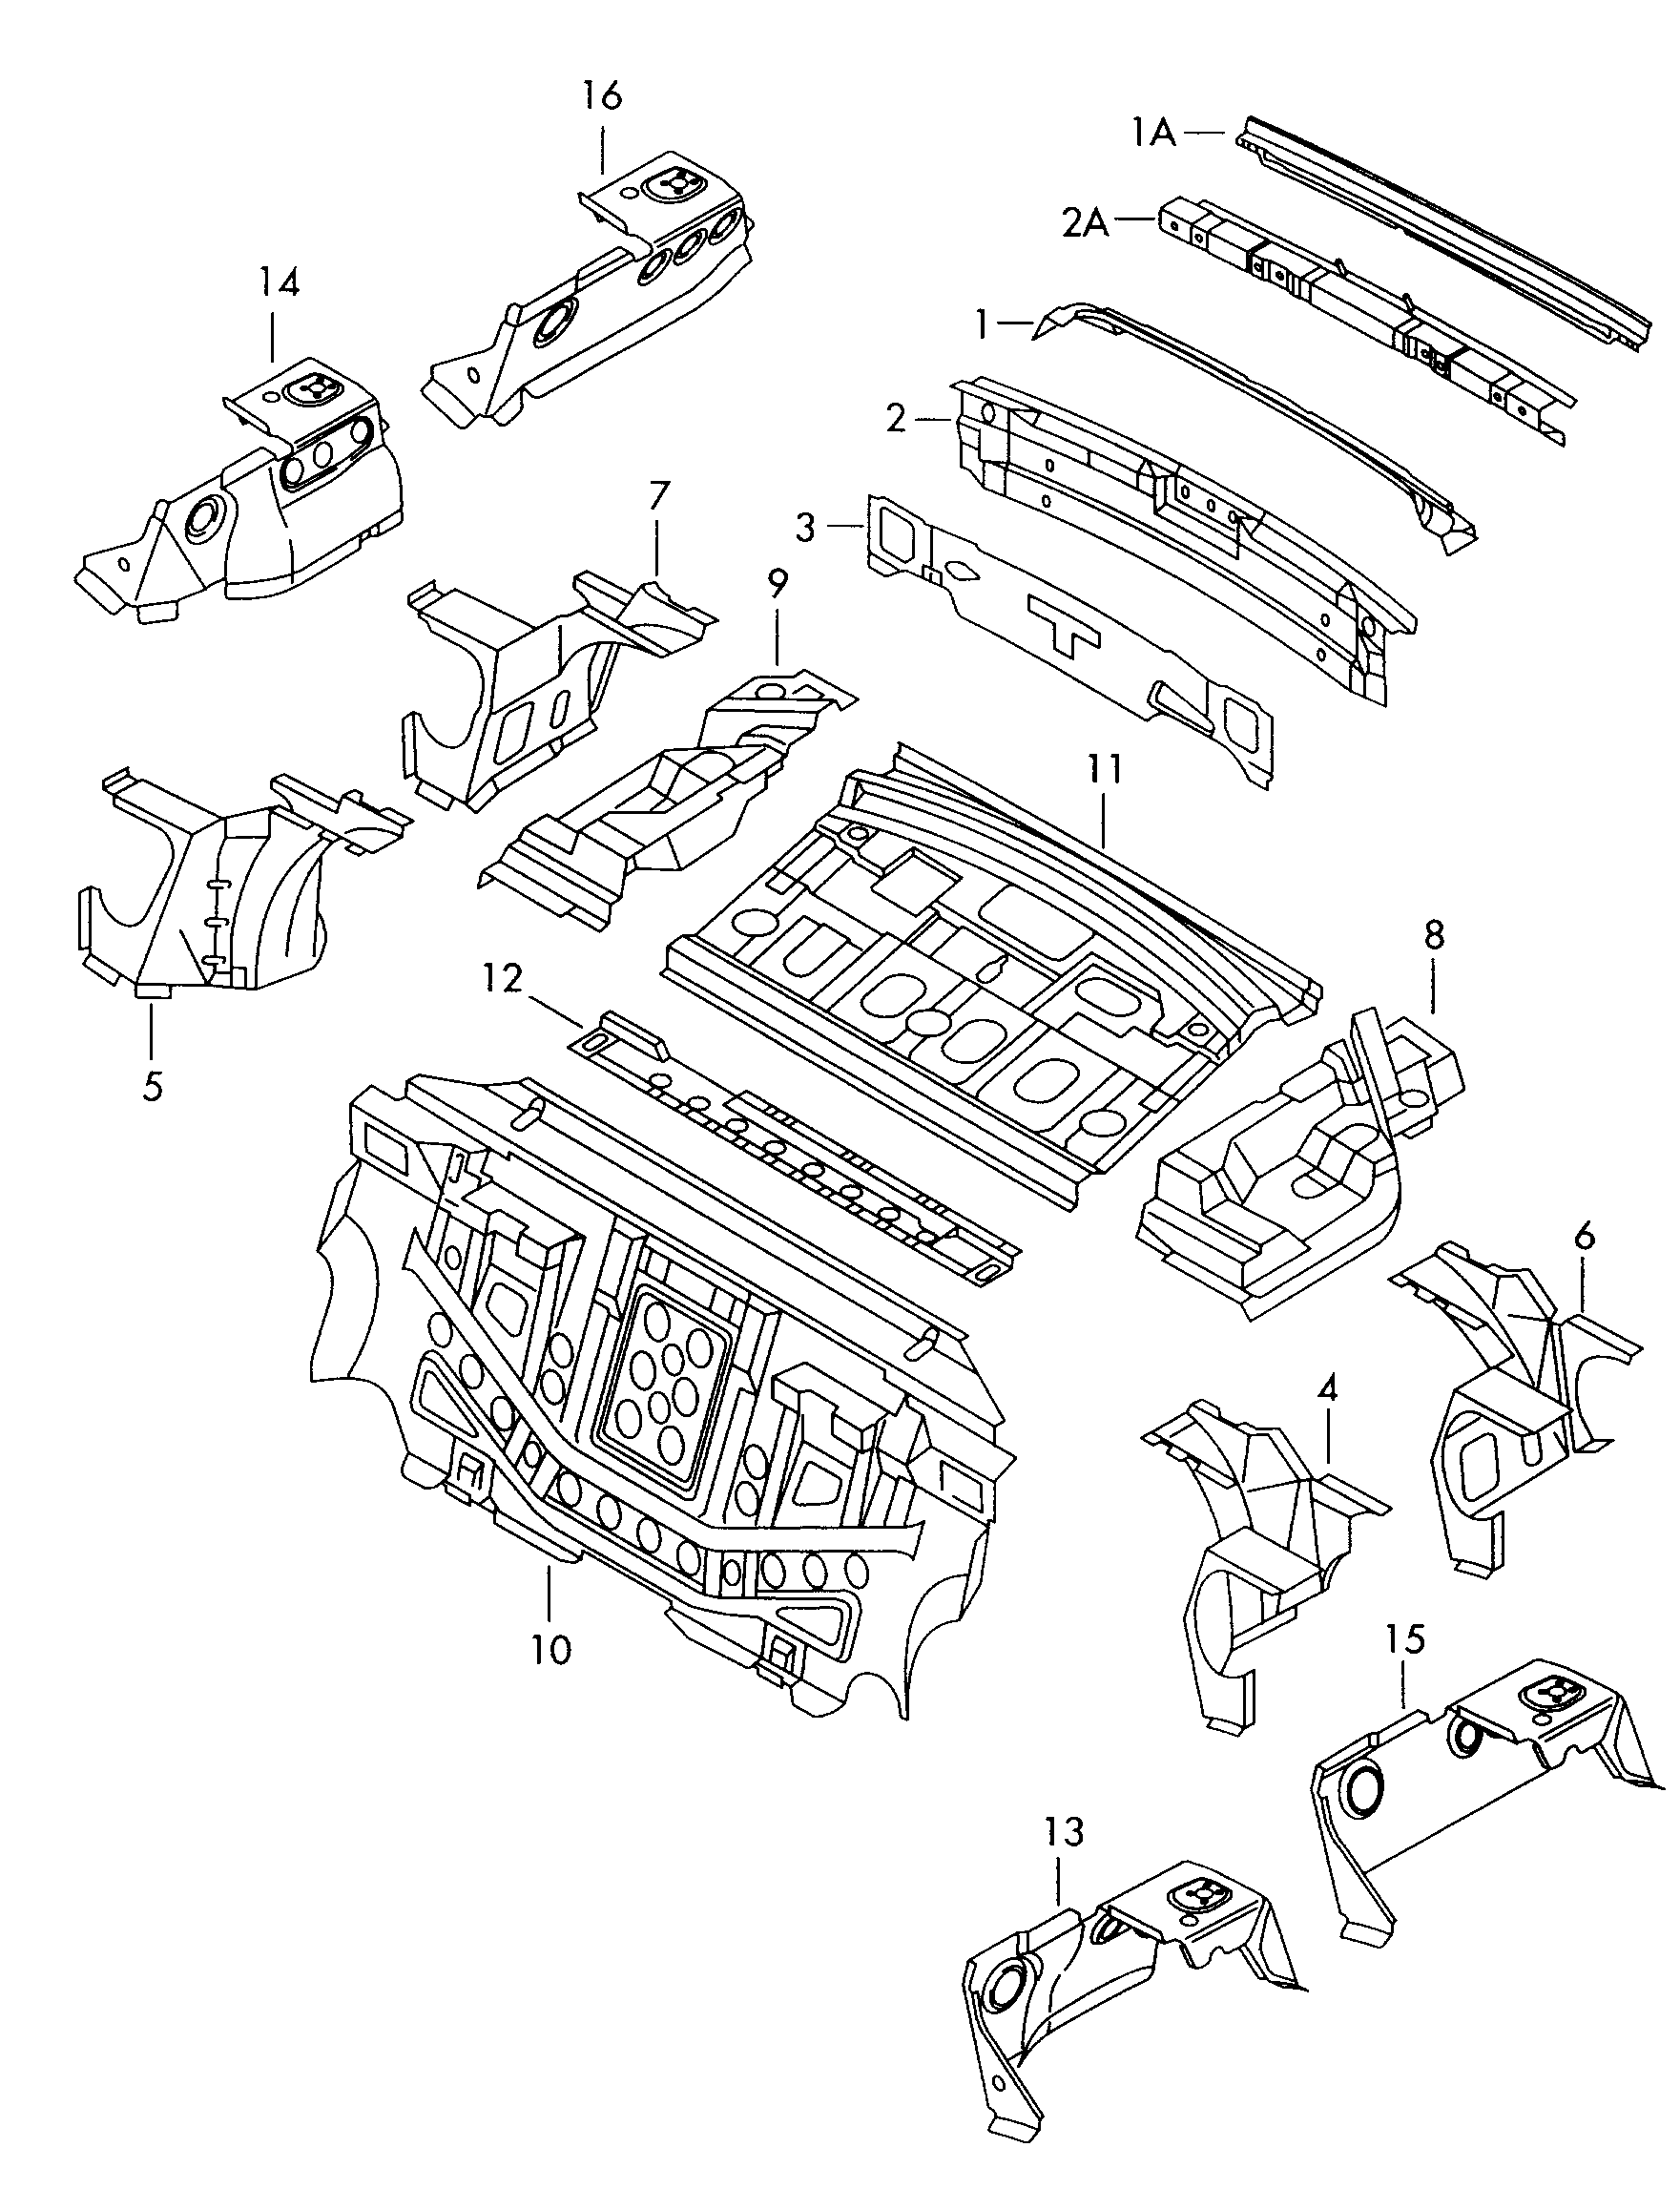 Arka duvar; Arka koruma sacı - Audi A6/Avant(A6)  